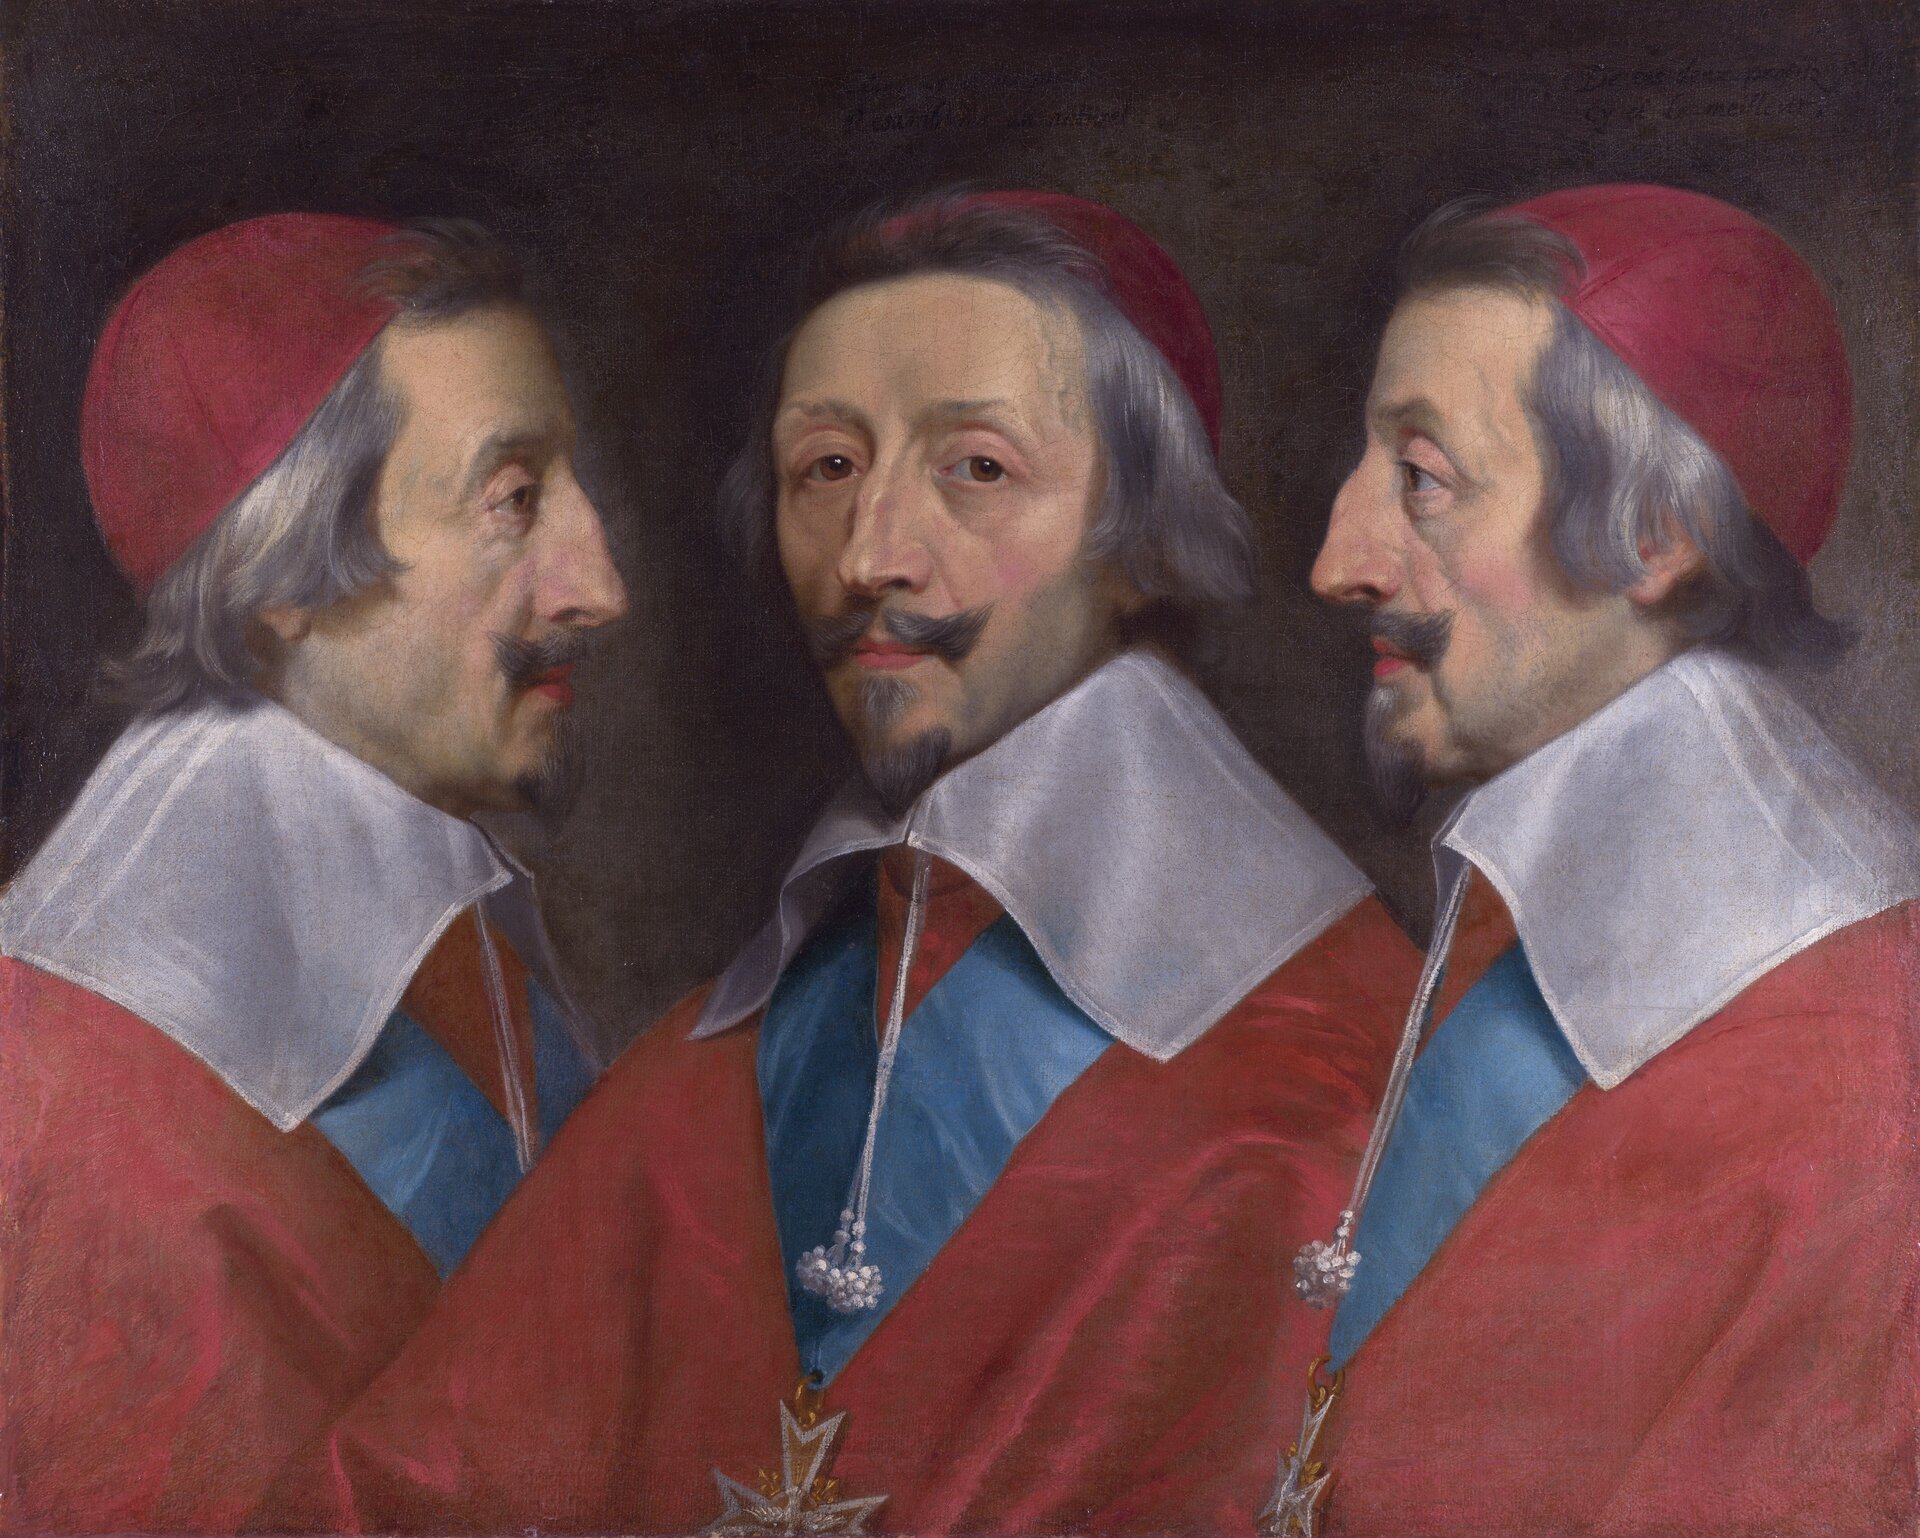 Ilustracja przedstawia obraz Philippe de Champaigne „Potrójny portret kardynała Richelieu”. Na obrazie znajduje się starszy mężczyzna, na co wskazują siwe włosy, broda i wąsy. Postać widoczna jest z trzech profili: lewy, prawy oraz środkowy. Kardynał ubrany jest w czerwoną suknię z białym kołnierzem. Na głowie ma także czerwony czepek. Na szyi, spod kołnierza widoczny jest długi naszyjnik.